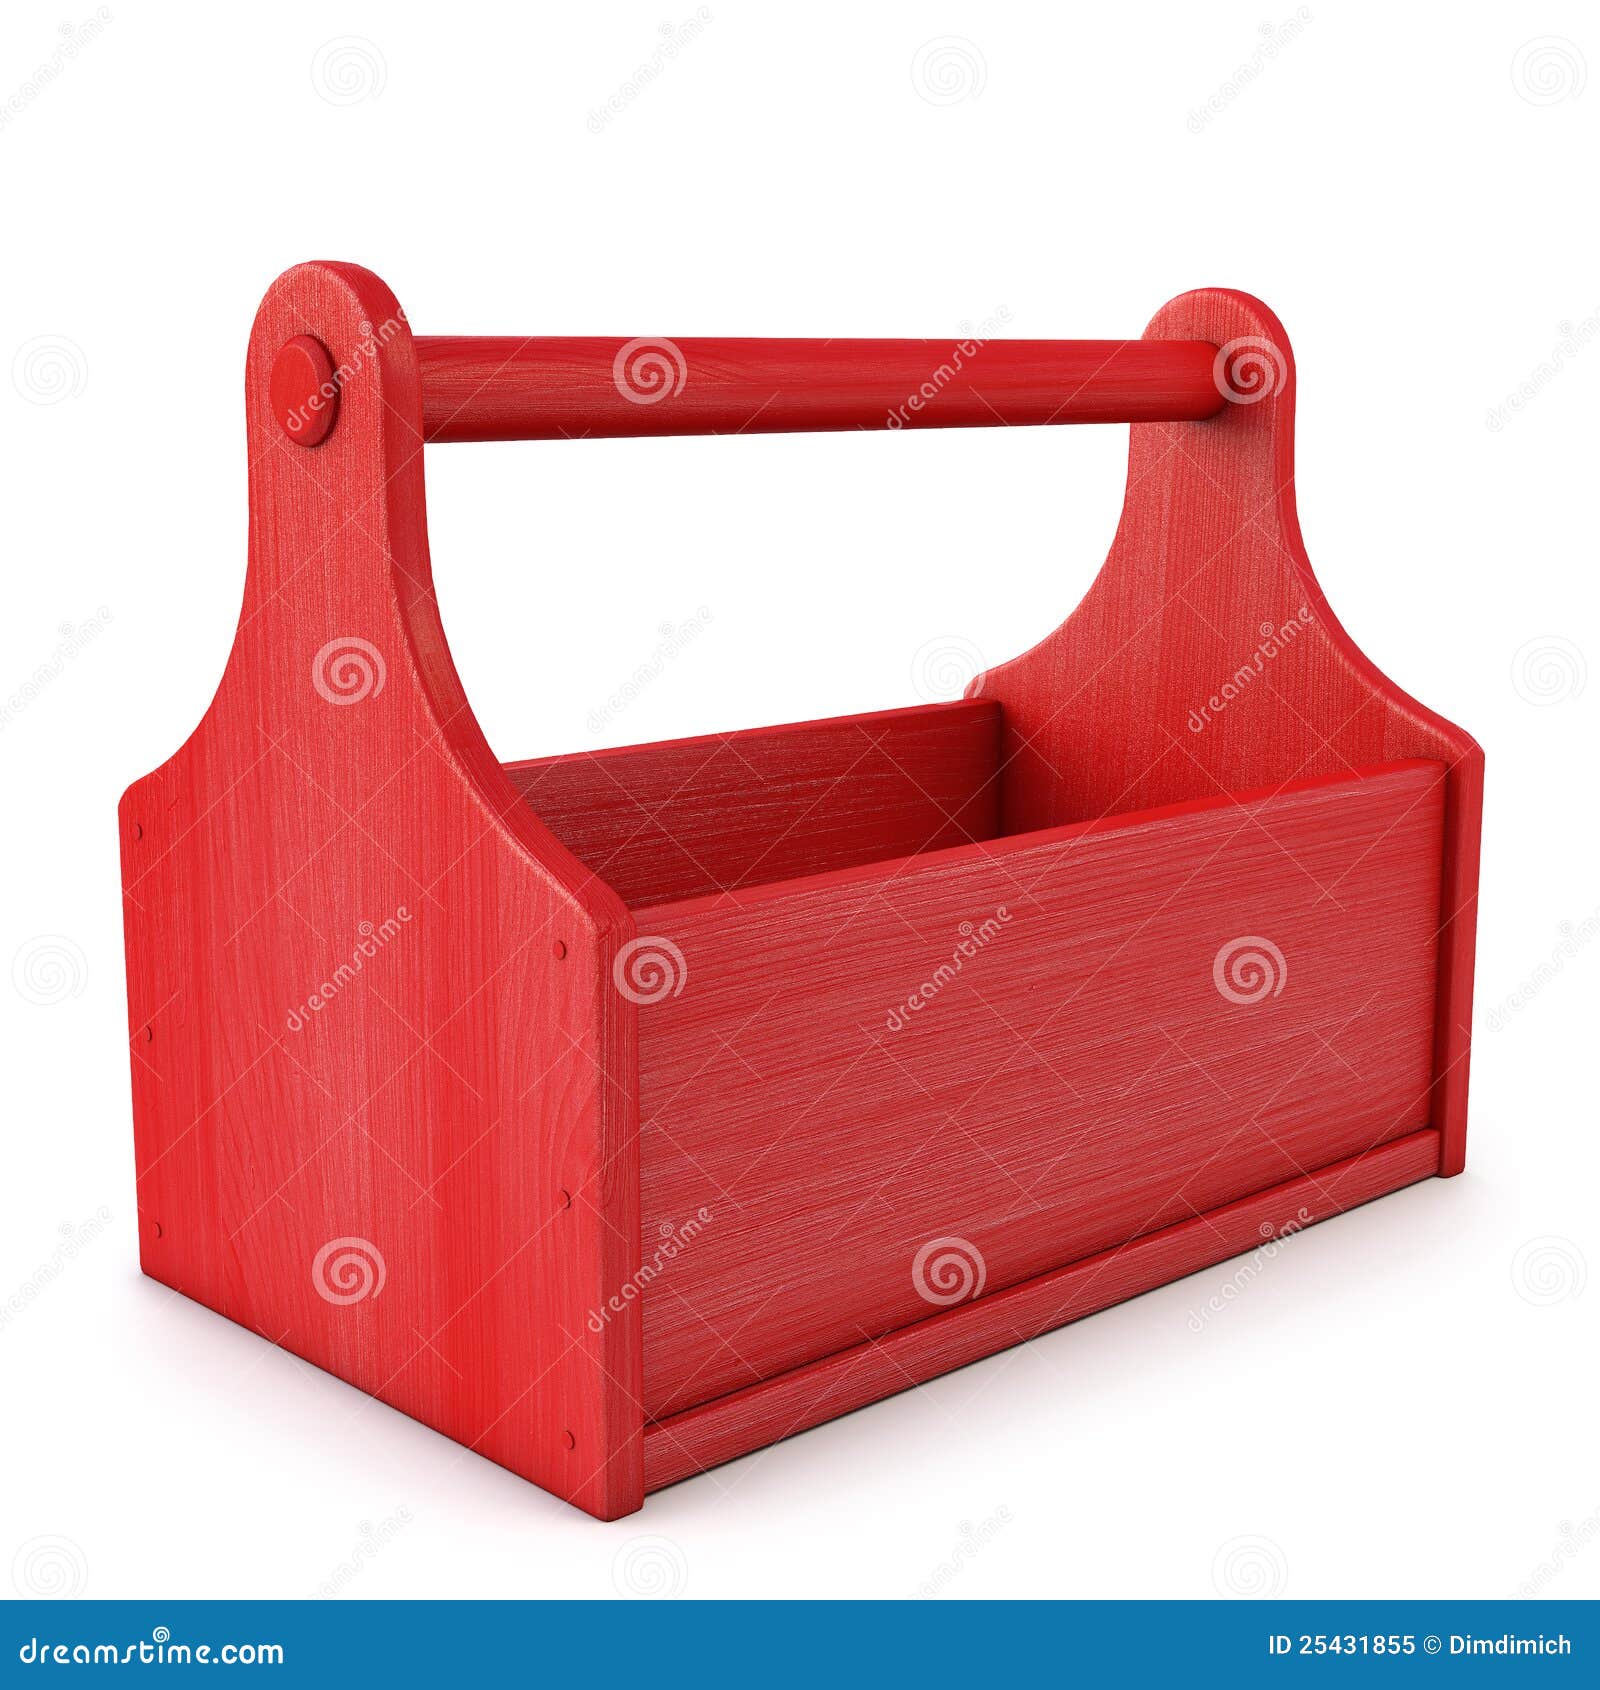 Caja de herramientas vacía: fotografía de stock © design56 #85173974